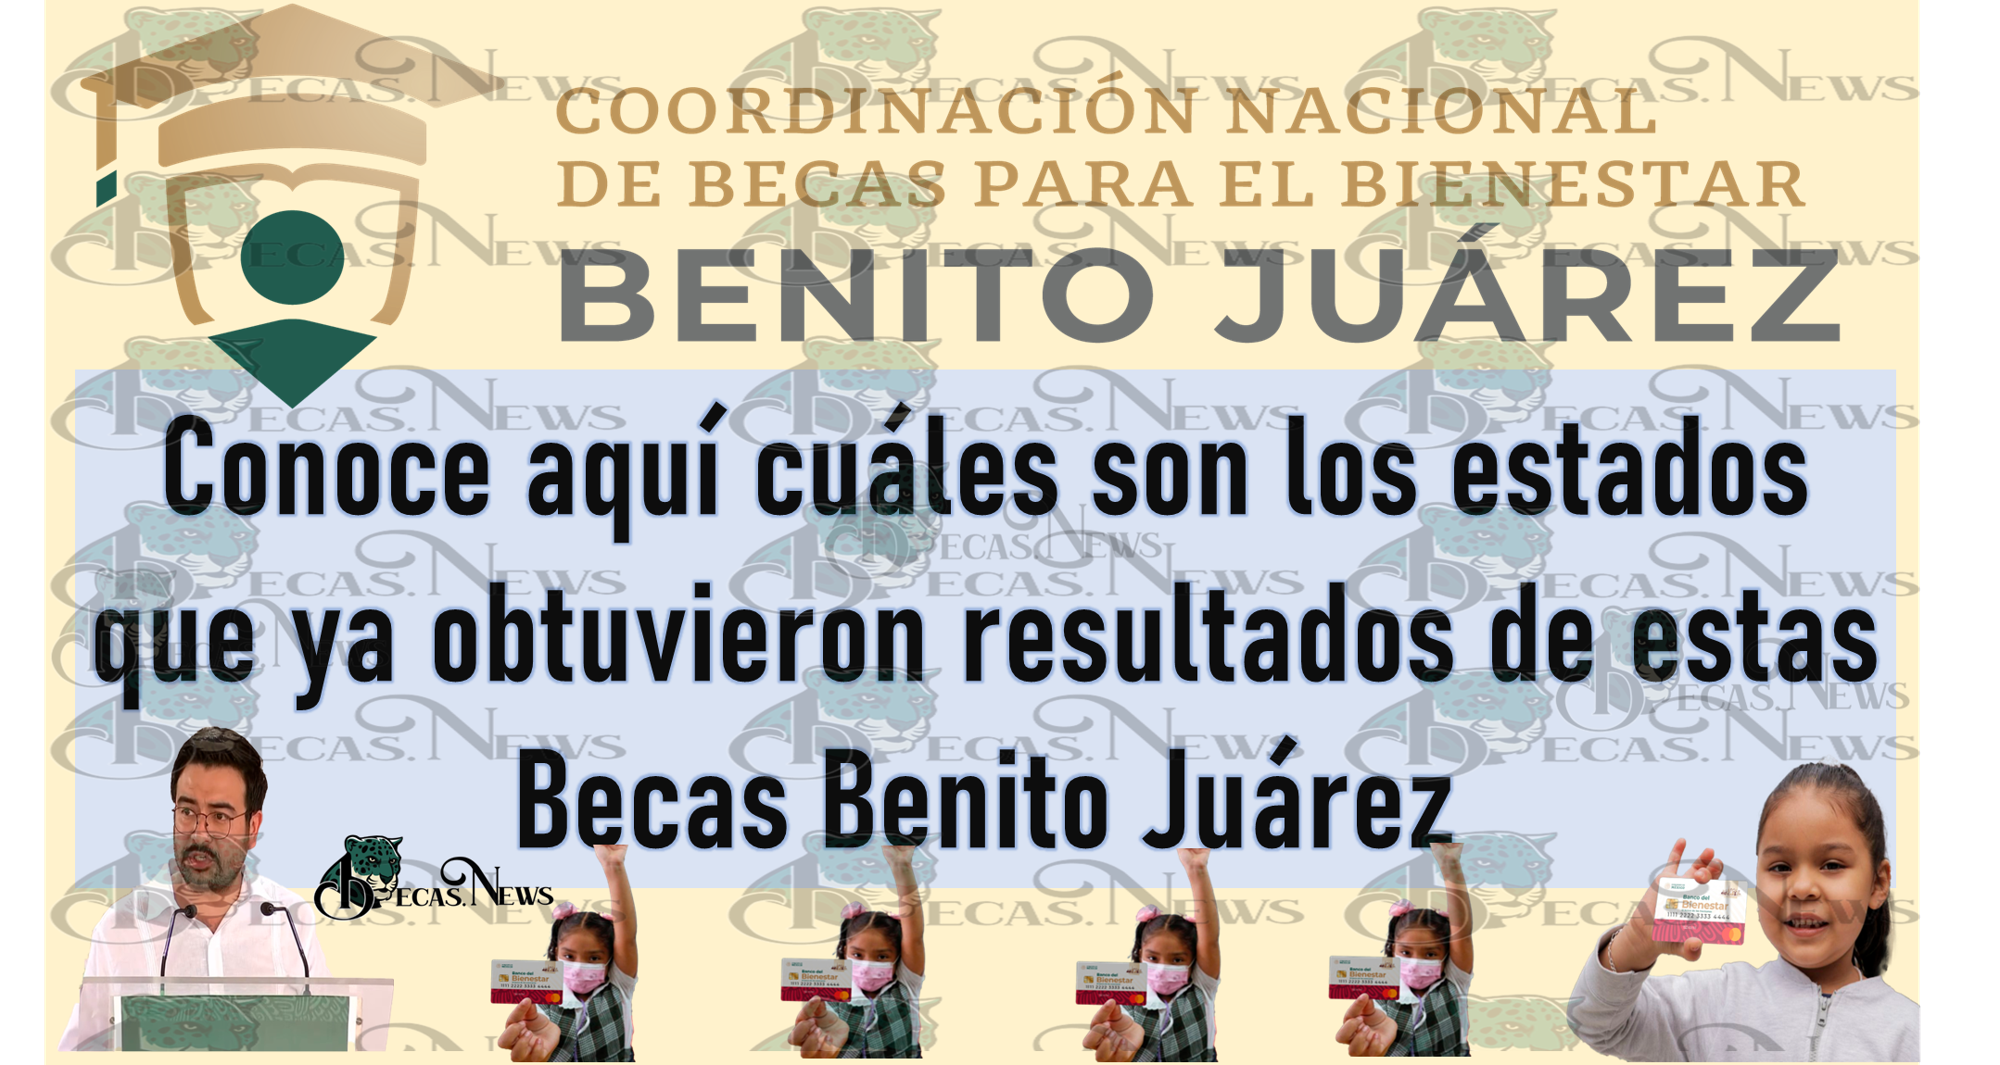 Conoce aquí cuáles son los estados que ya obtuvieron resultados de estas Becas Benito Juárez 2023